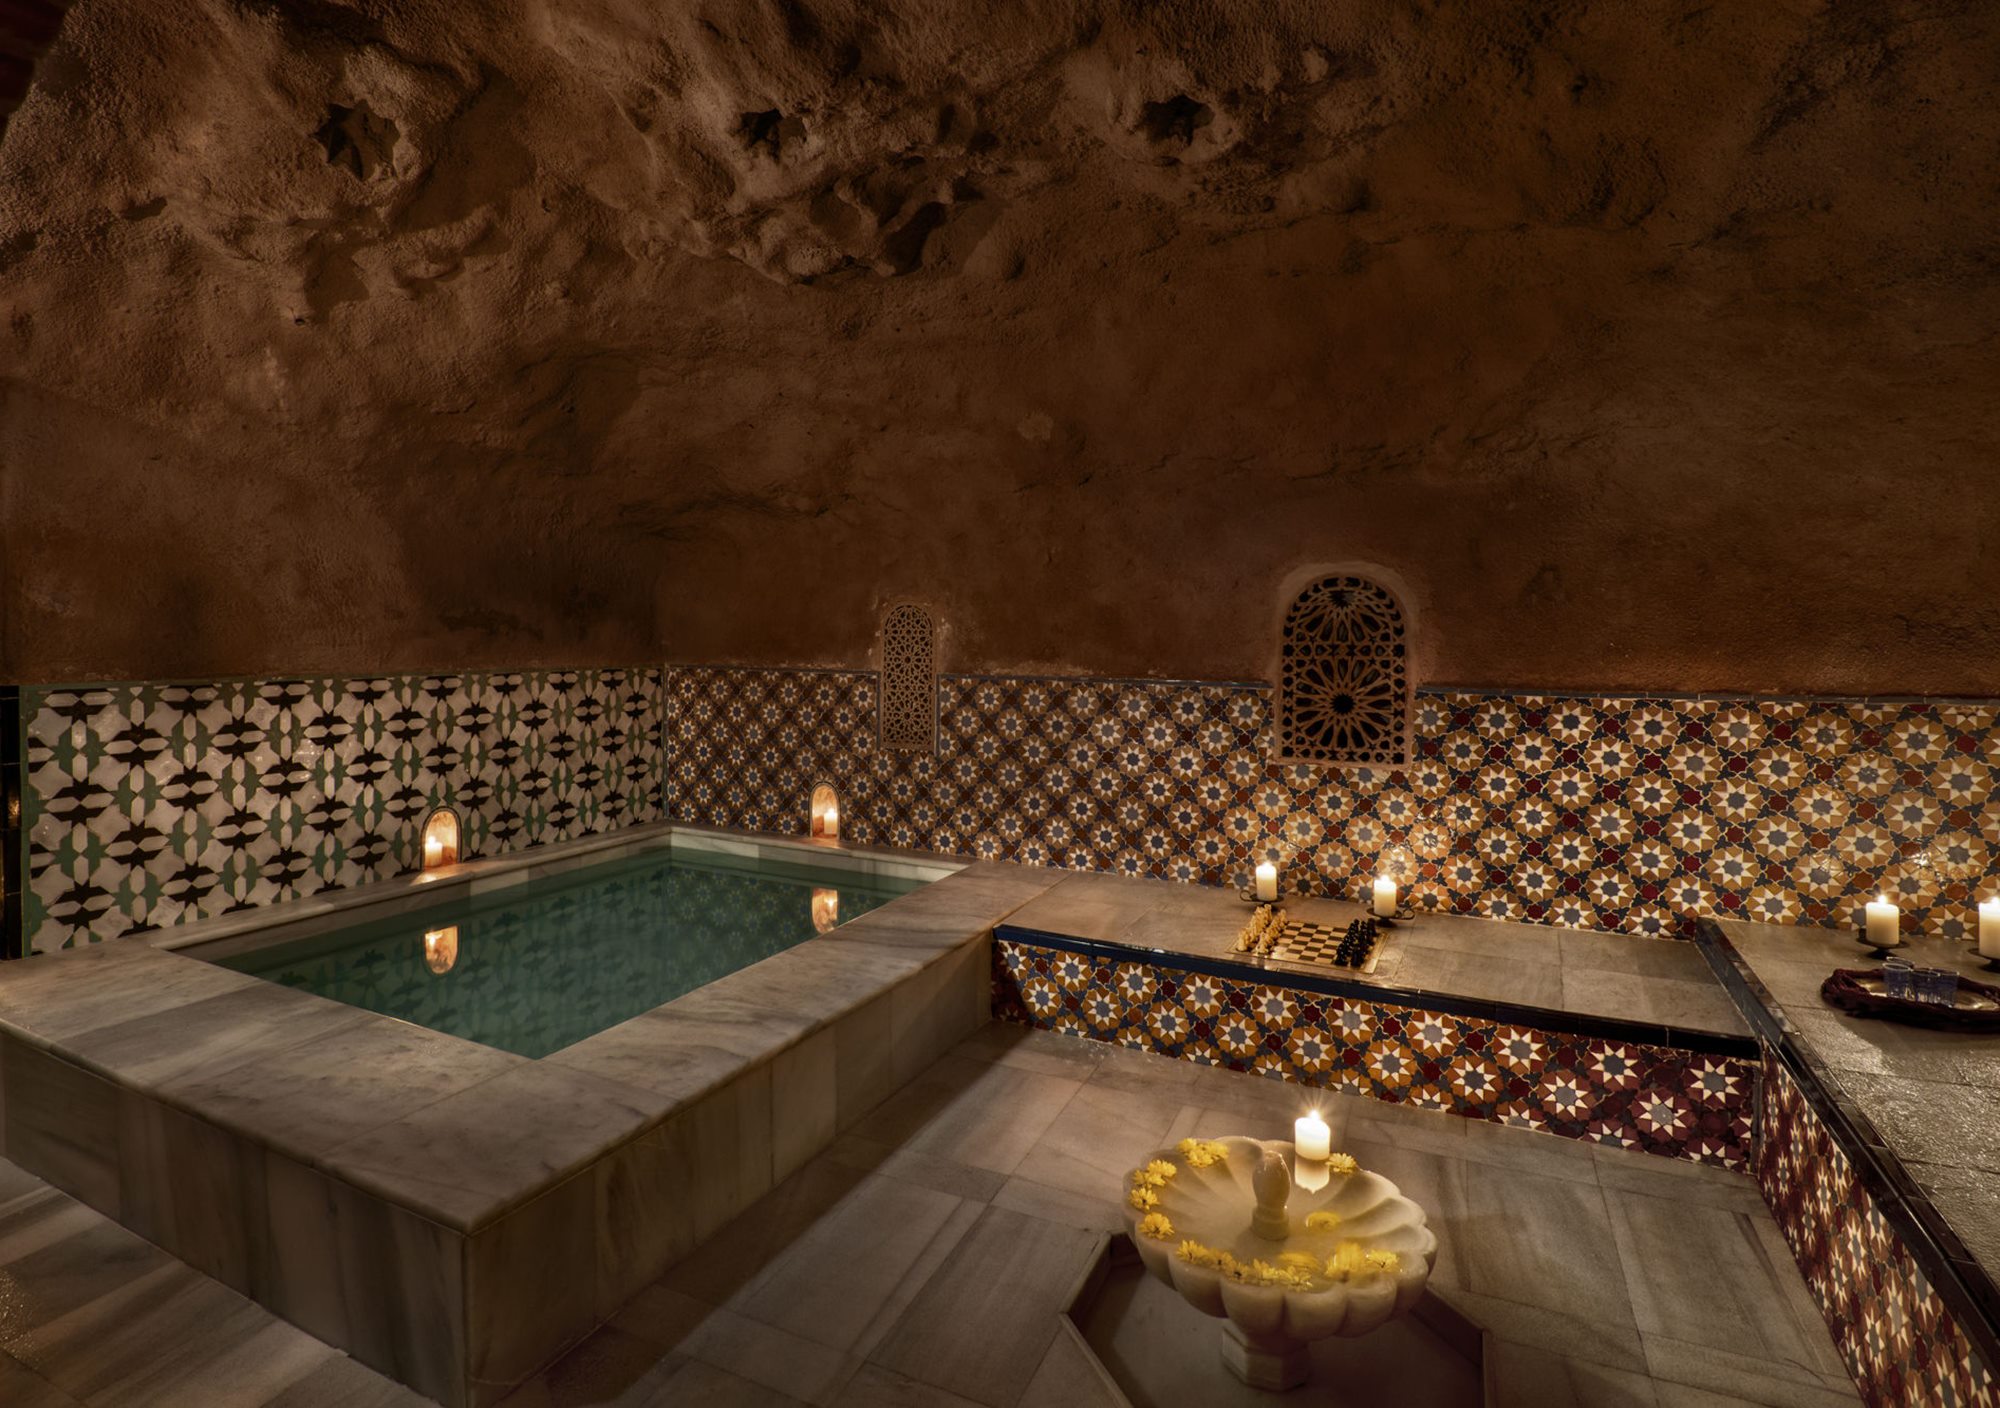 Visitar la Alhambra y baño relajante en Hammam, visitas a la Alhambra con baño en Hammam, tours Alhambra + baños árabes en Hammam, excursión Alhambra y baño árabe relajante en Hammam